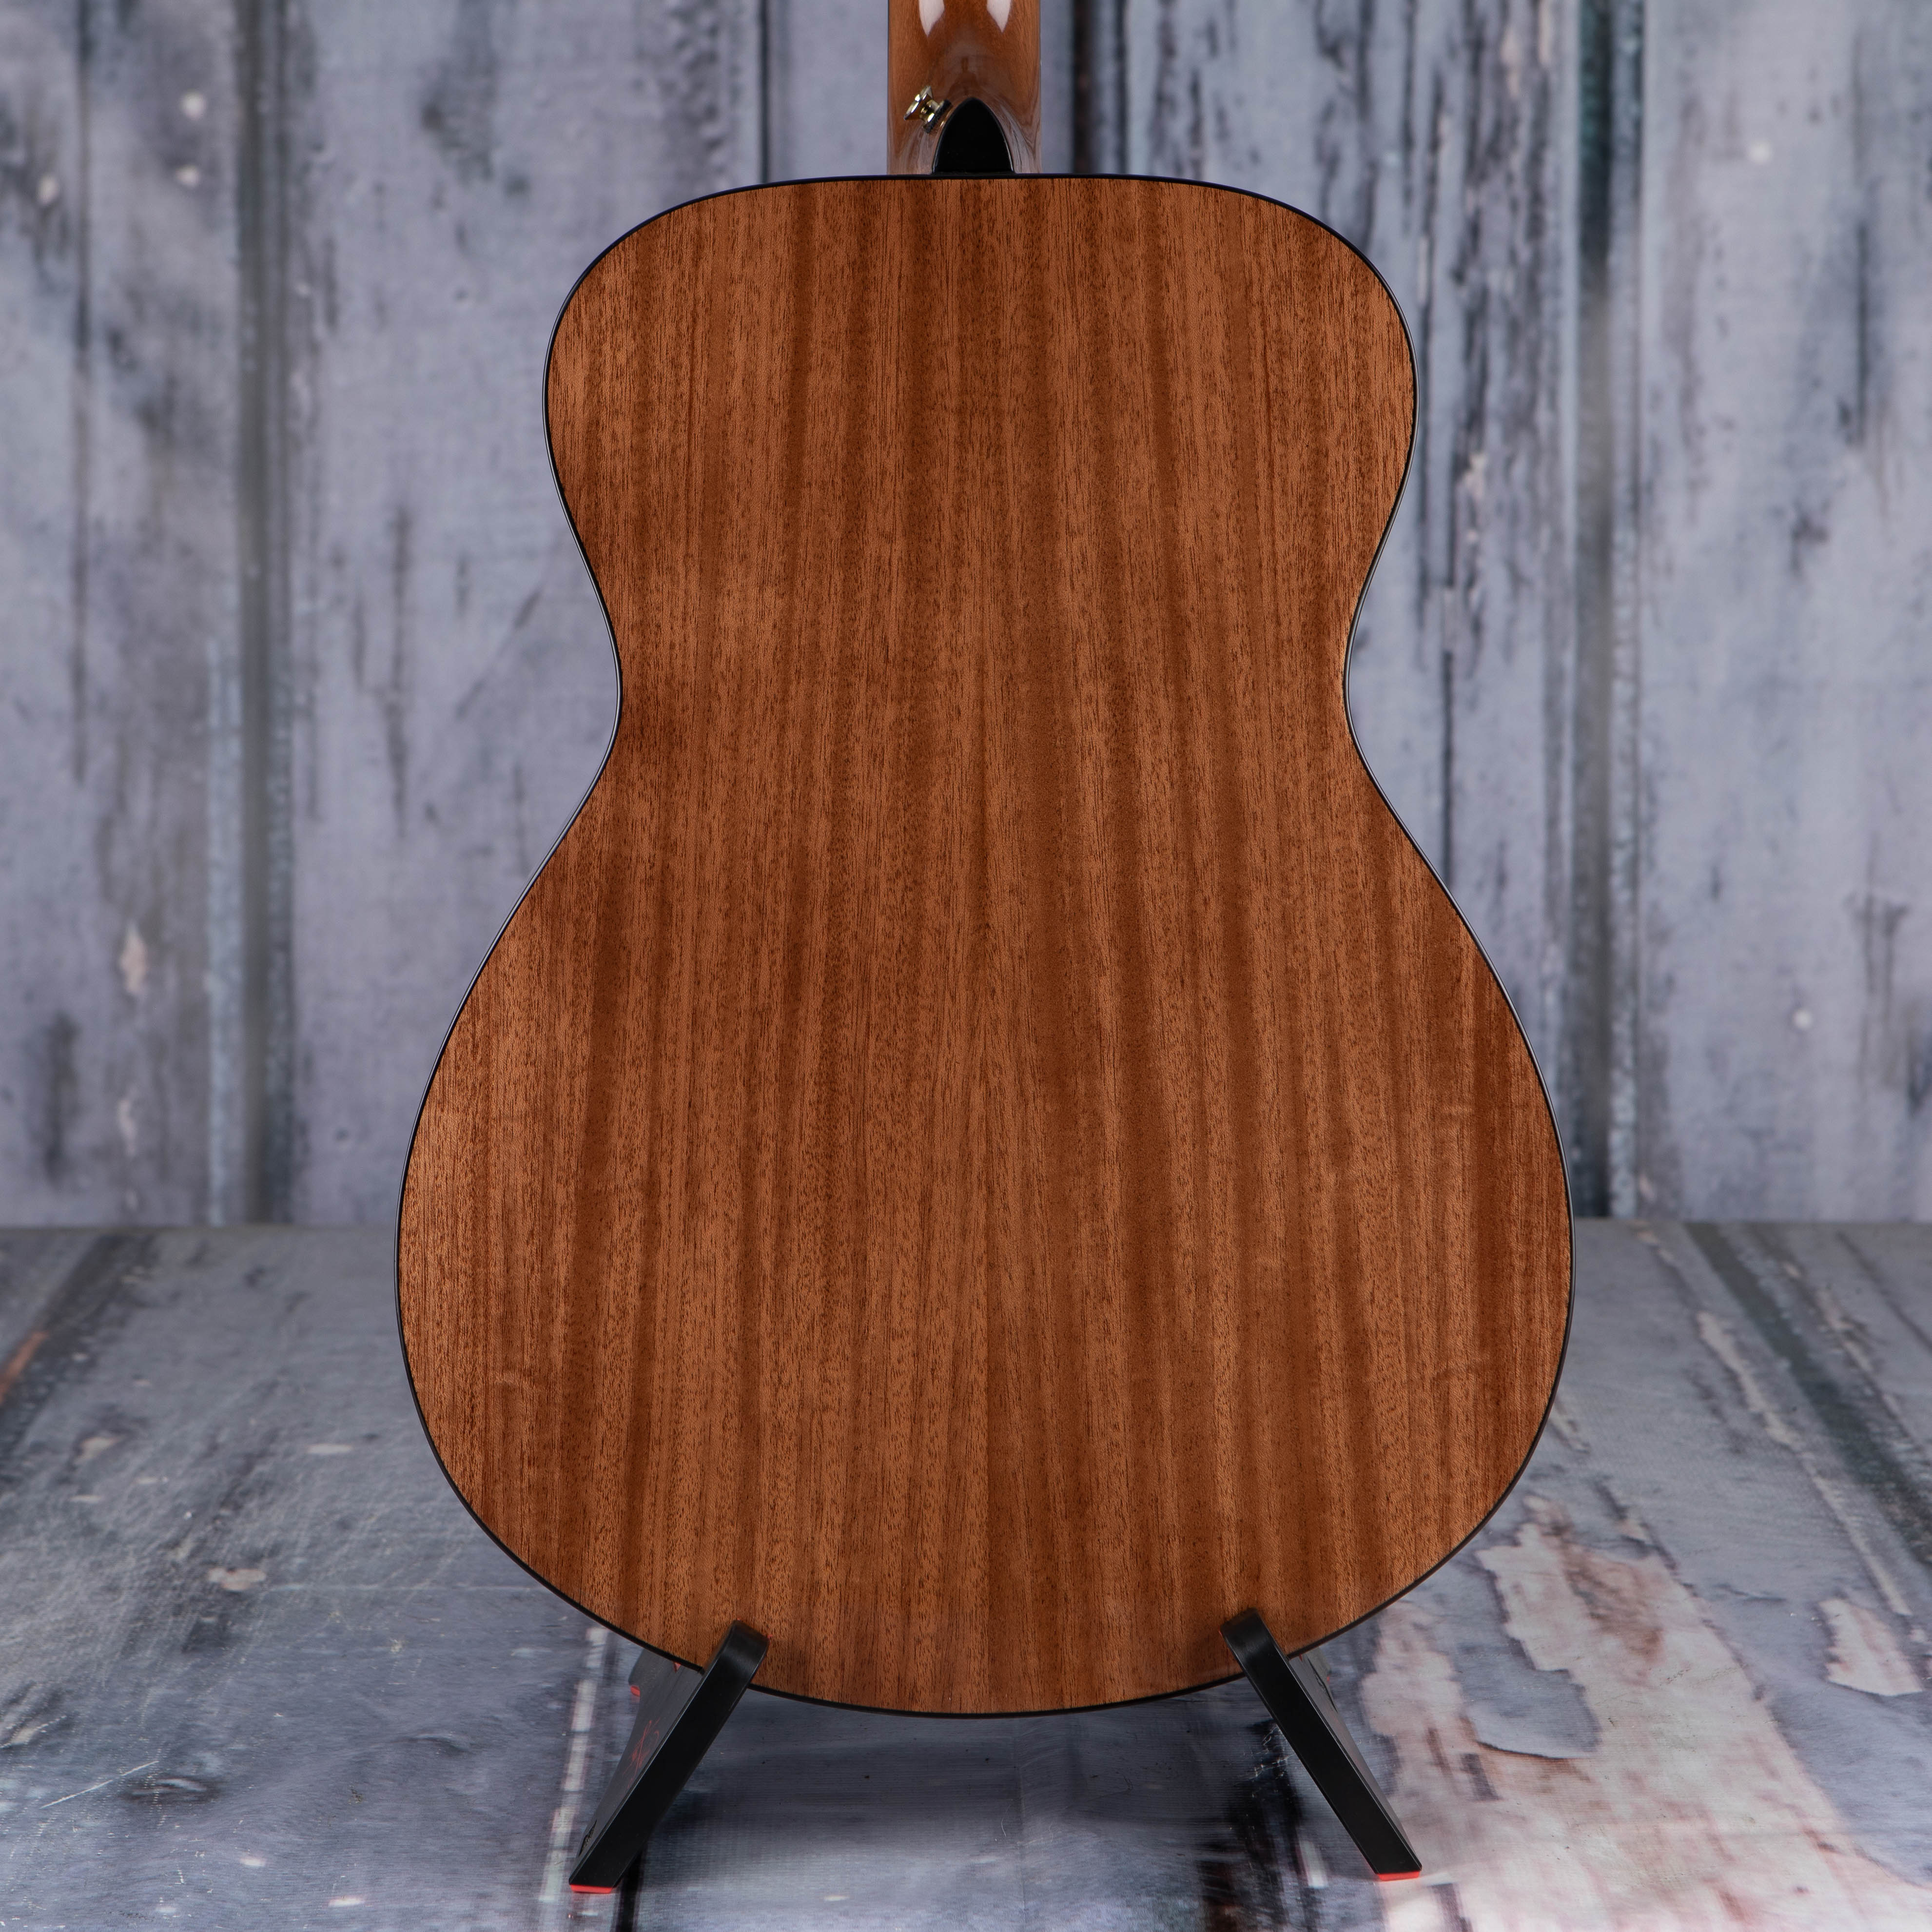 Yamaha Storia III Acoustic/Electric Guitar, Chocolate Brown, back closeup